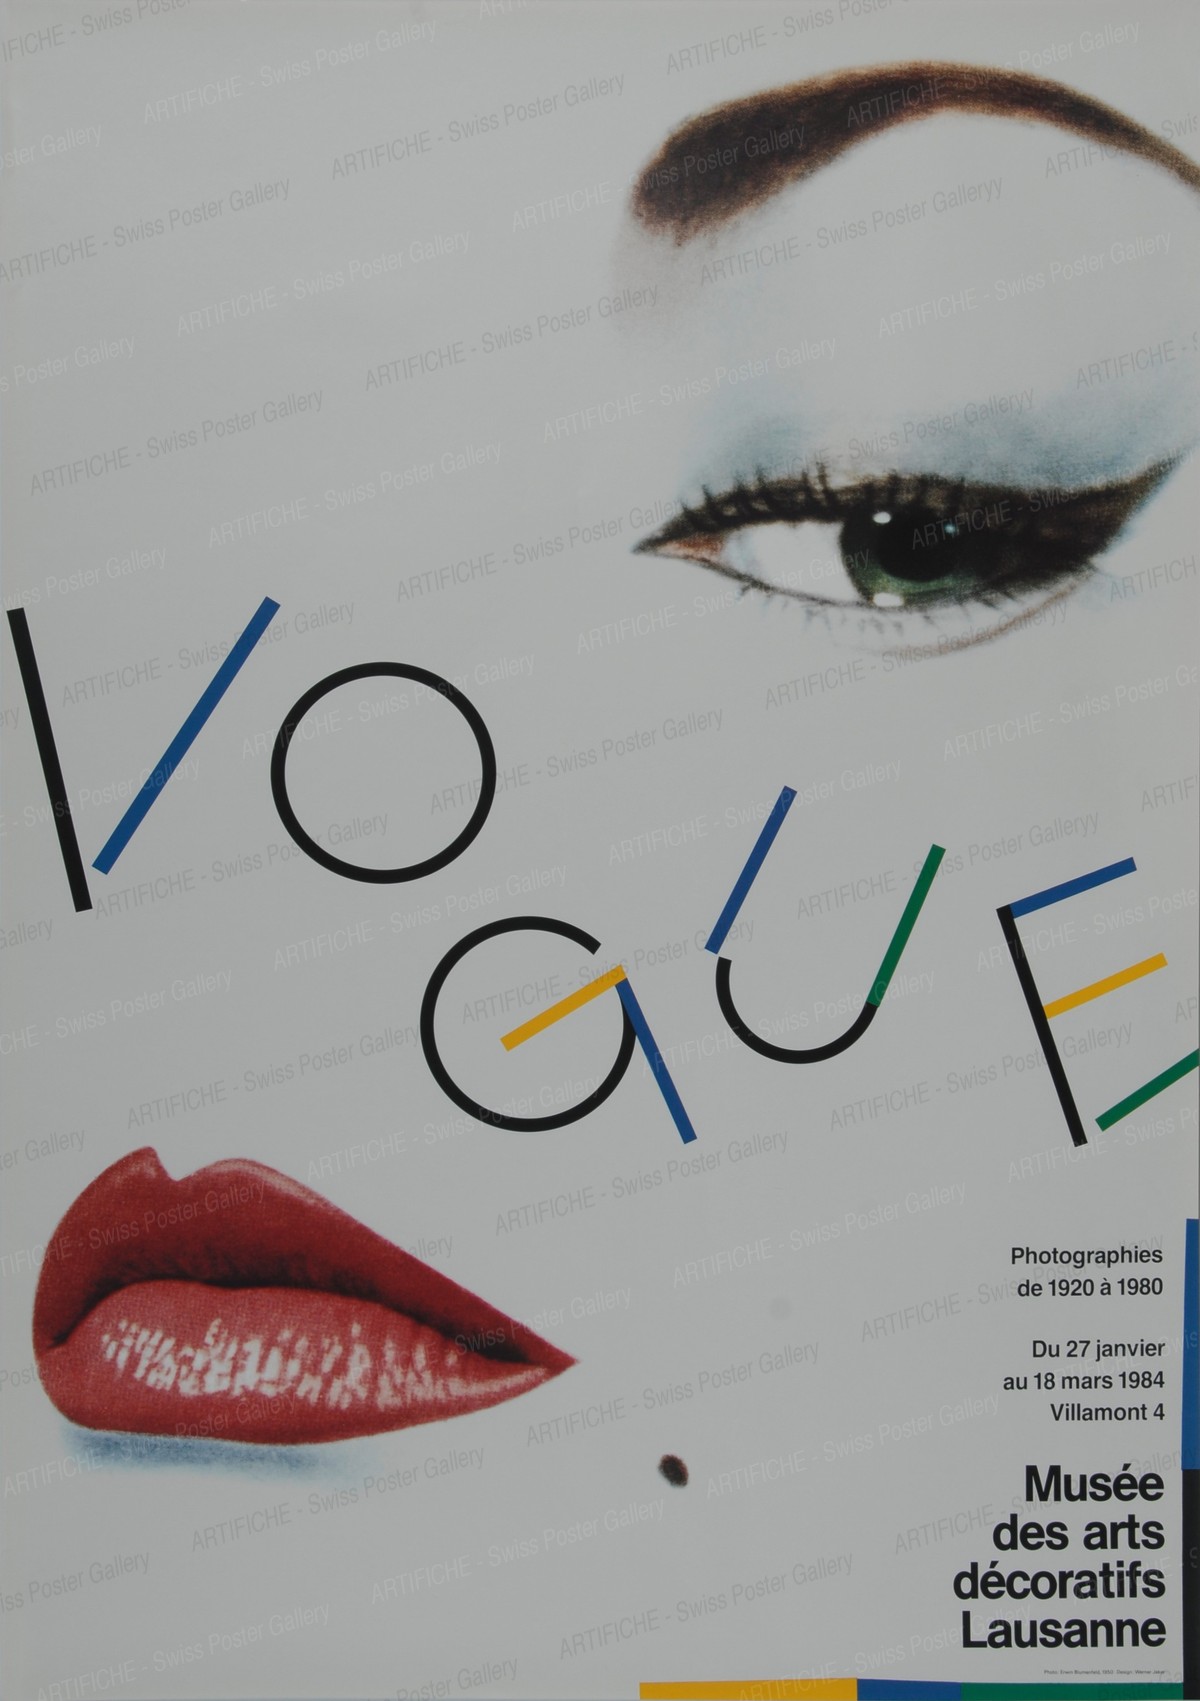 Lausanne Art Museum – Vogue, Werner Jeker